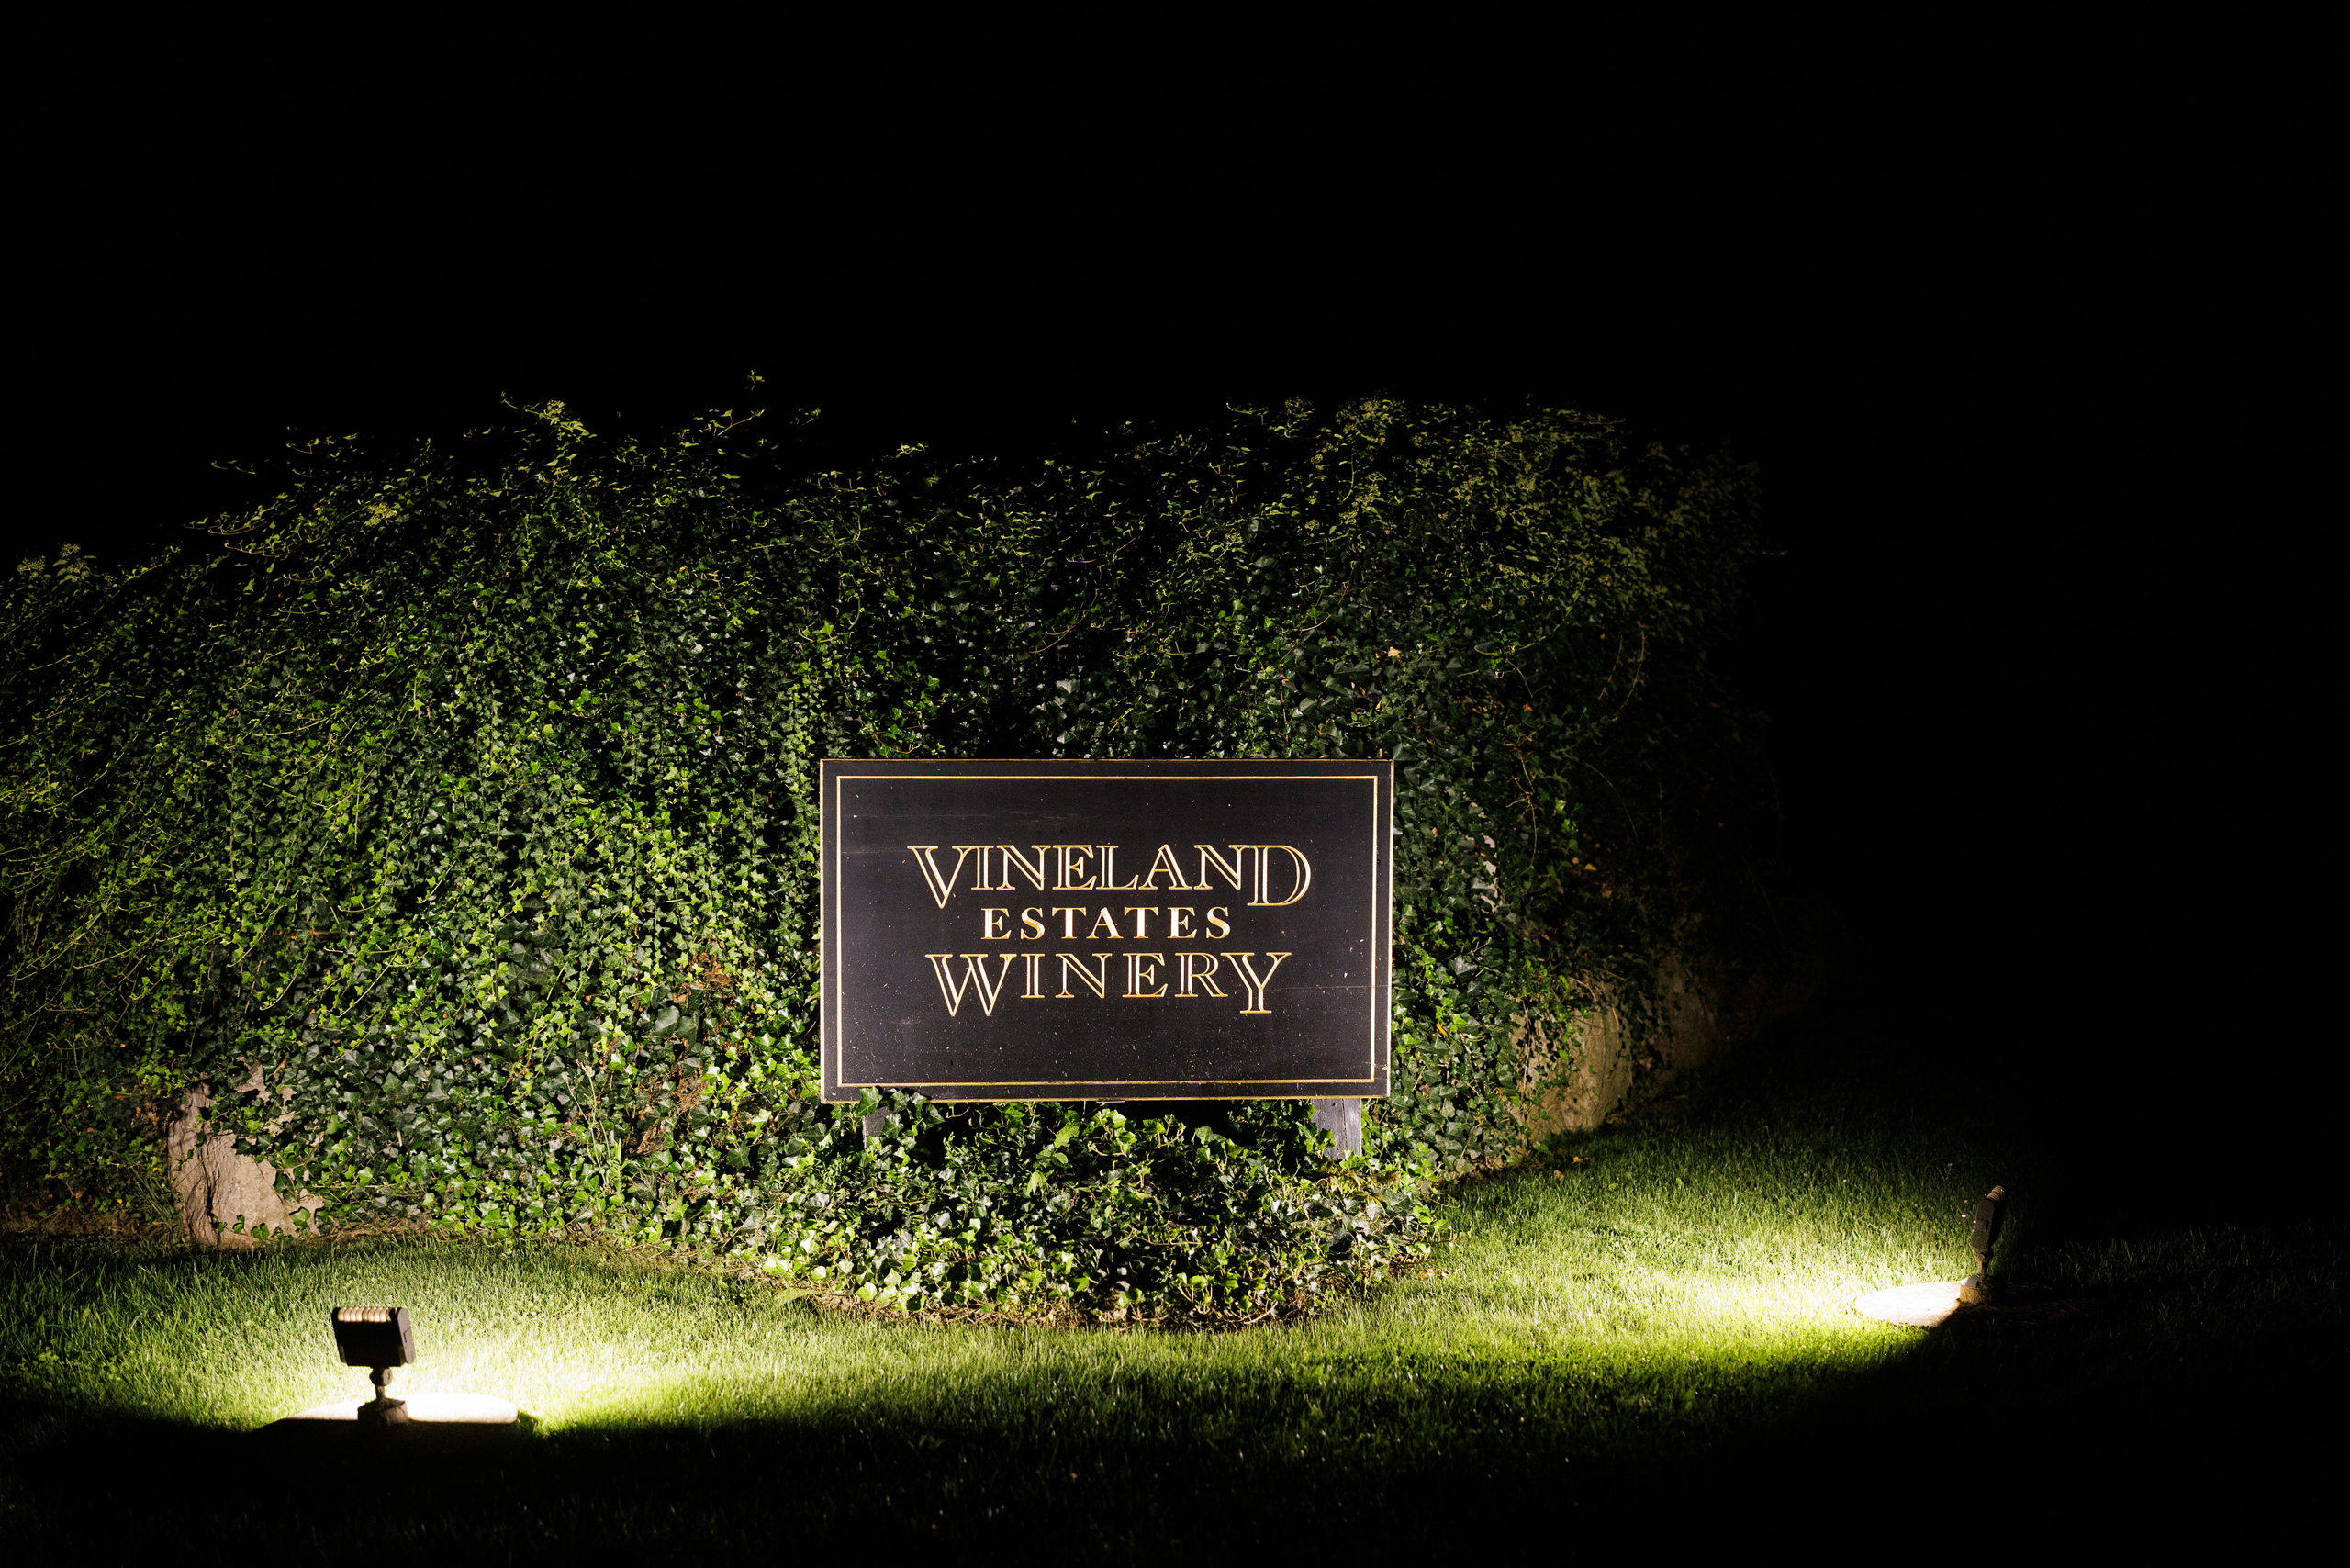 vineland estates winery entrance sign night